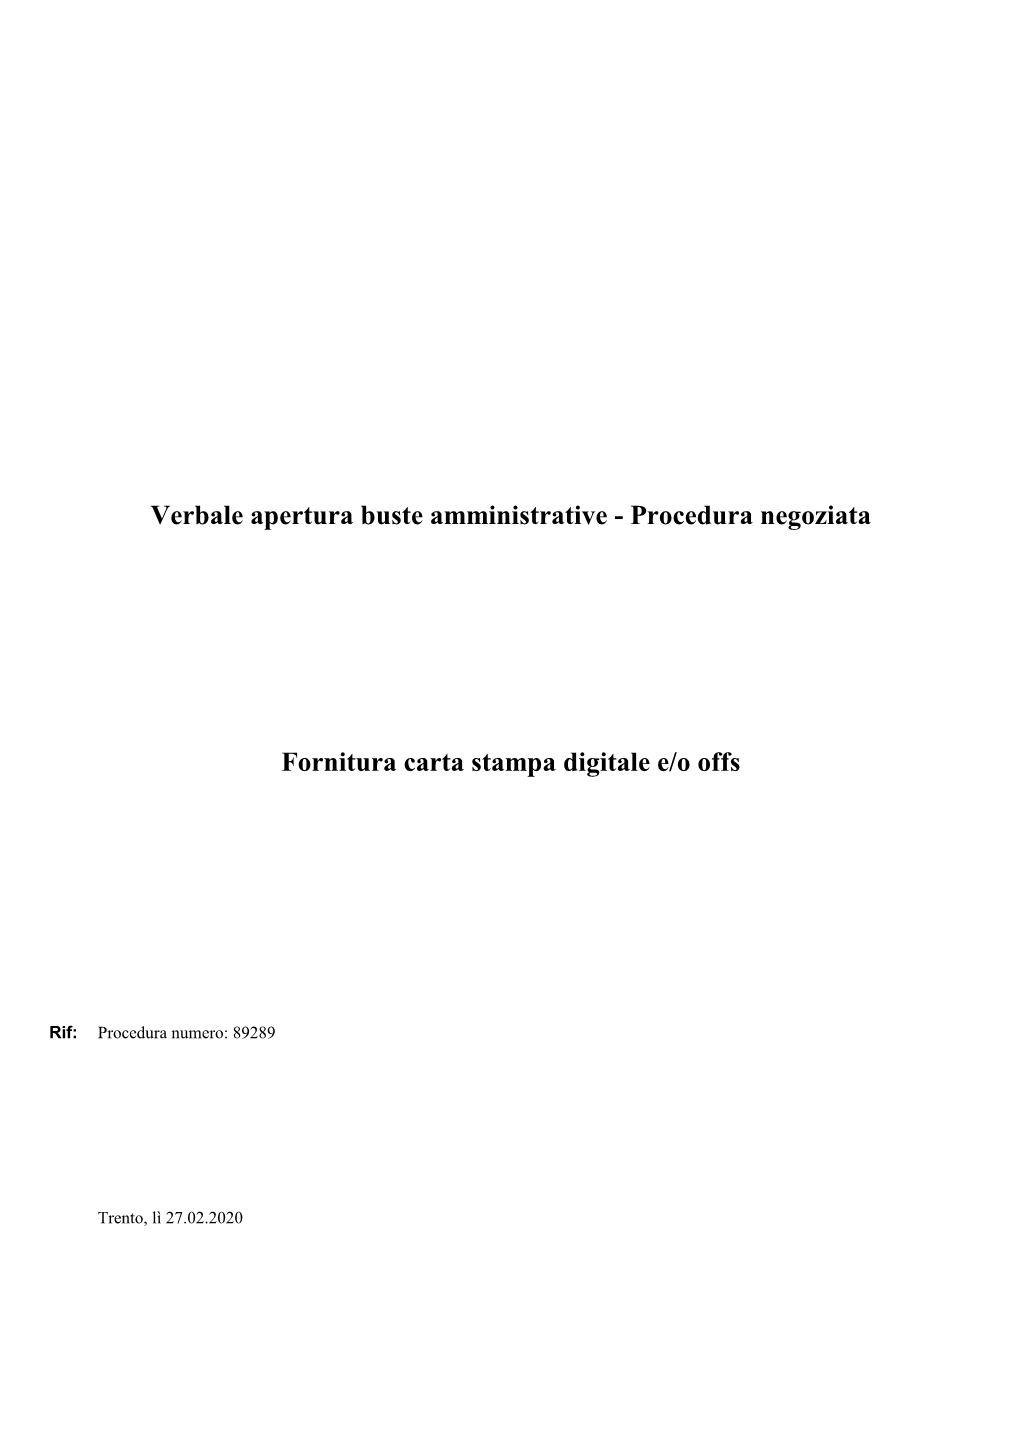 Procedura Negoziata Fornitura Carta Stampa Digitale E/O Offs